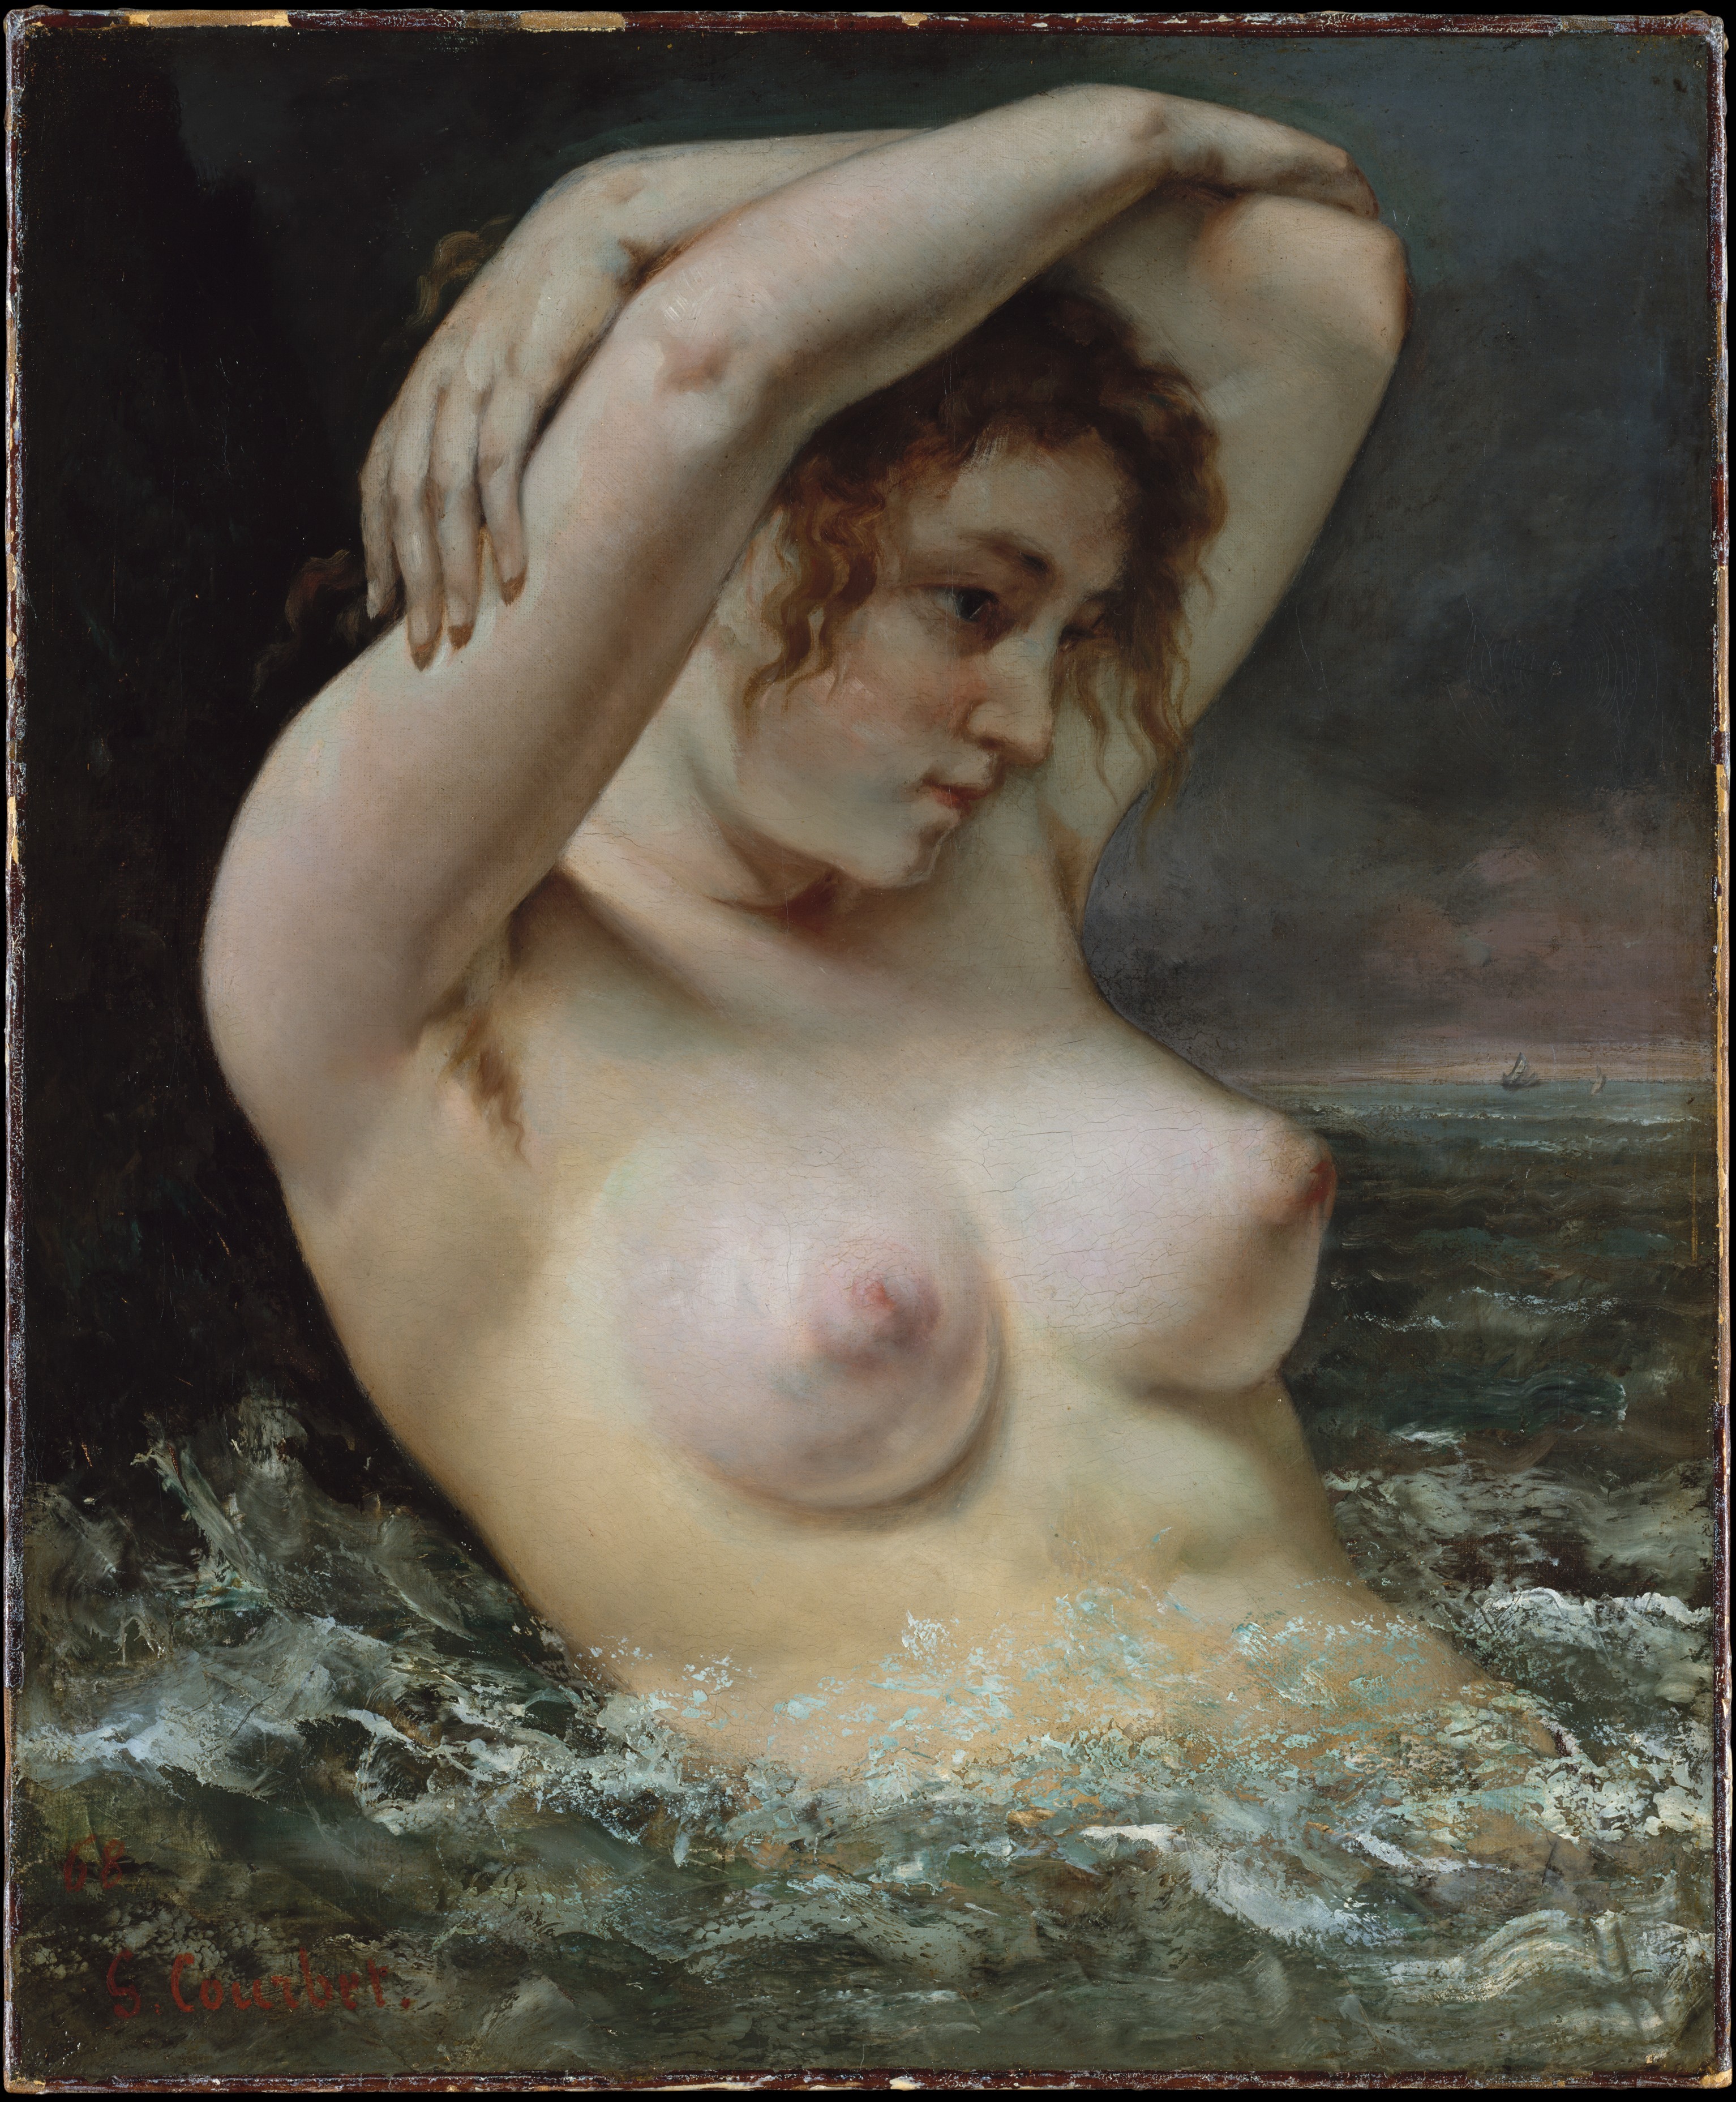  La Femme à la vague, Gustave Courbet, 1868